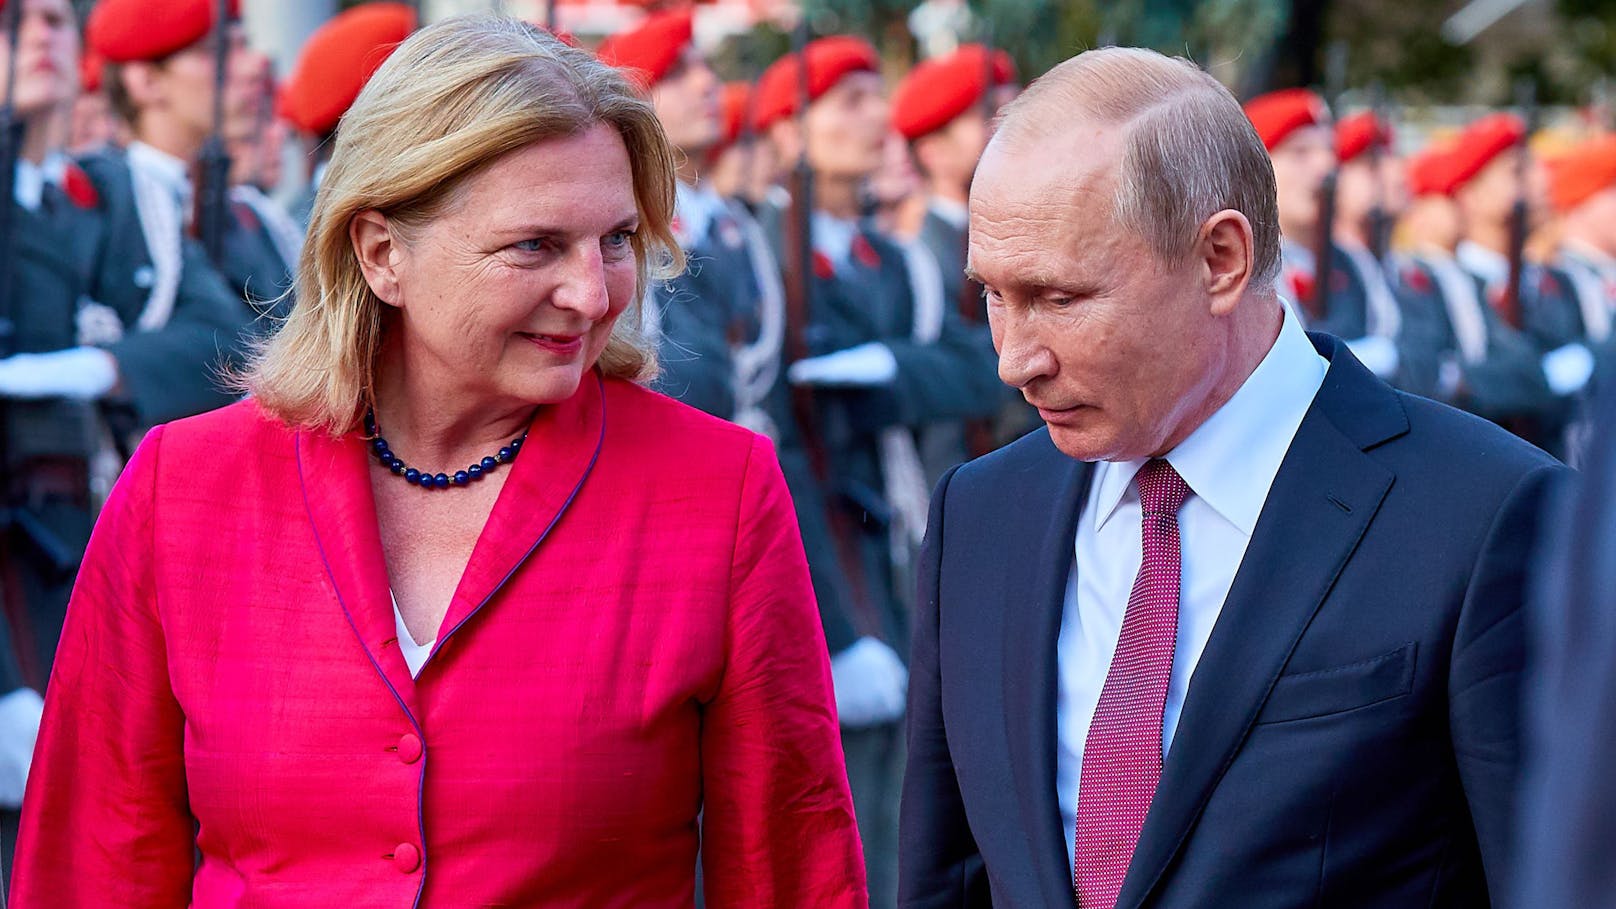 Karin Kneissl gilt als große Putin-Anhängerin.